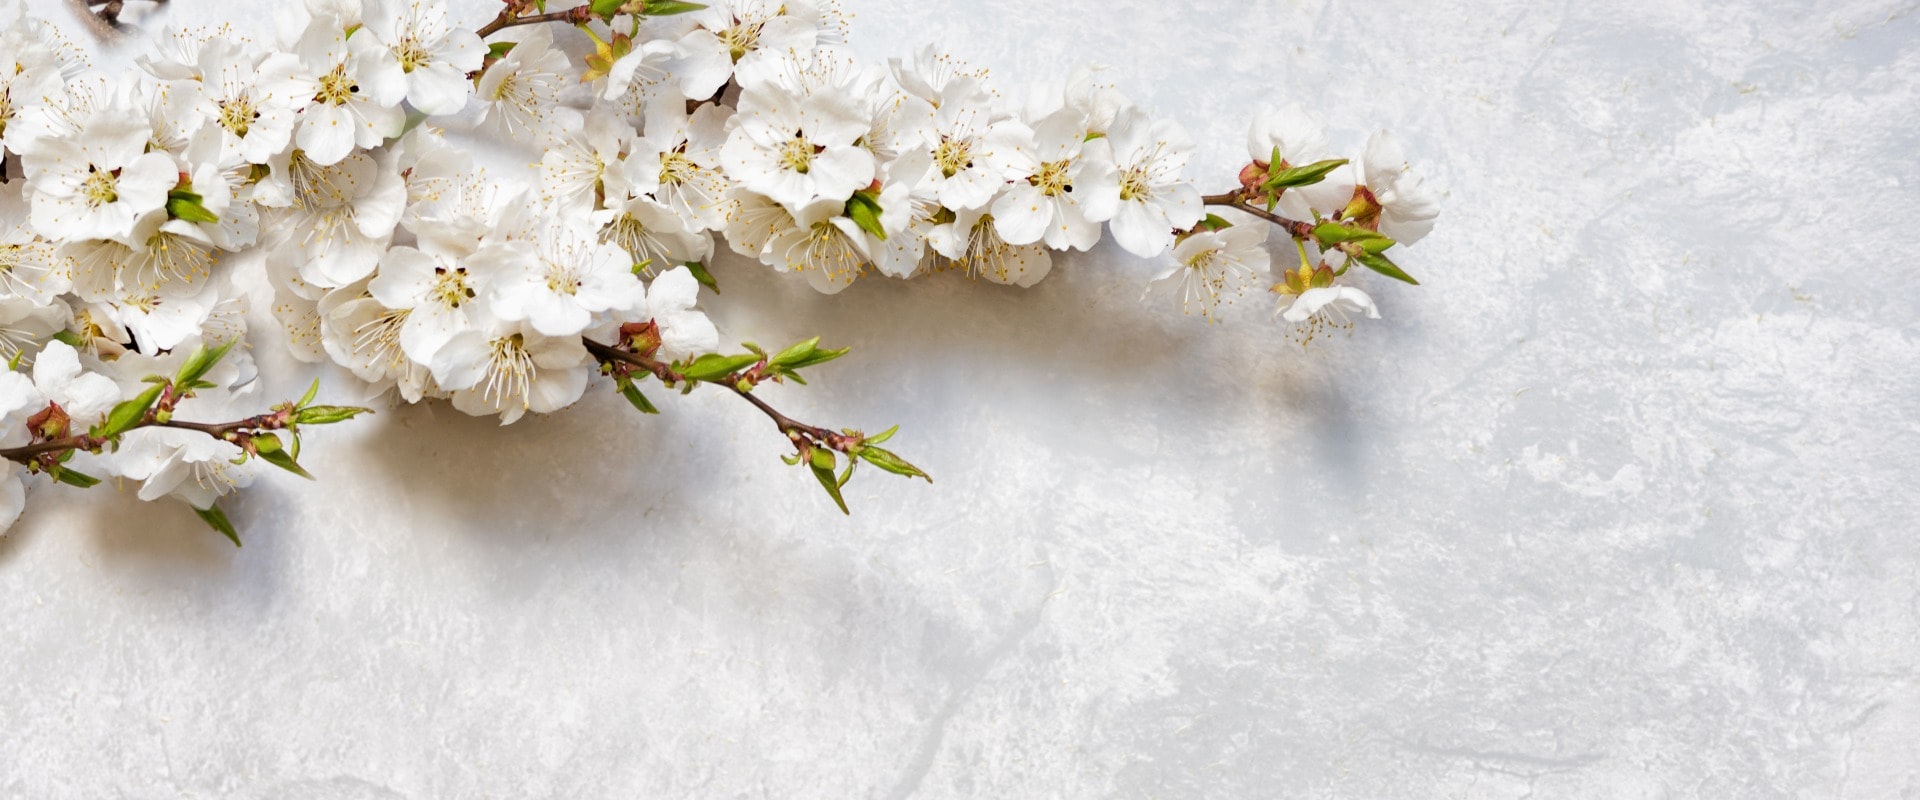 Blühende Kirschzweige auf einer Marmoroberfläche